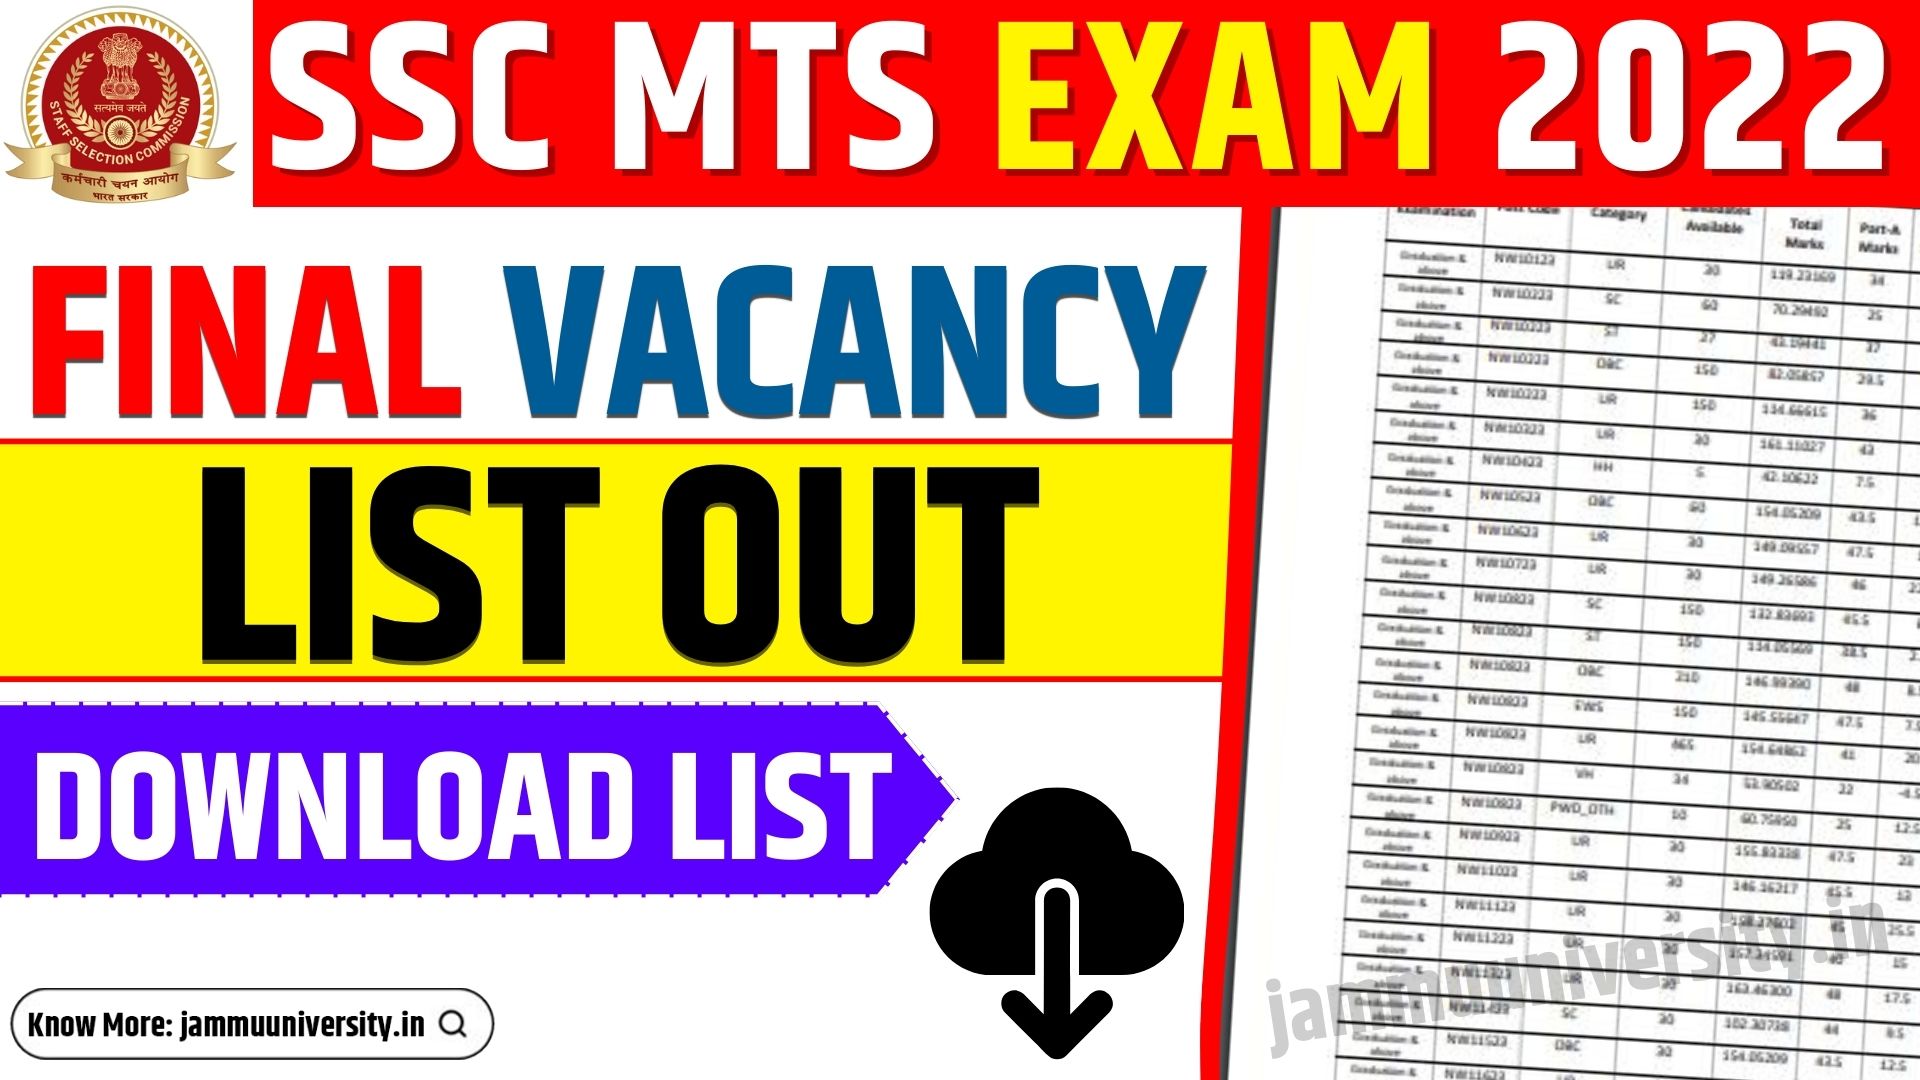 SSC MTS Exam 2022 Final Vacancy